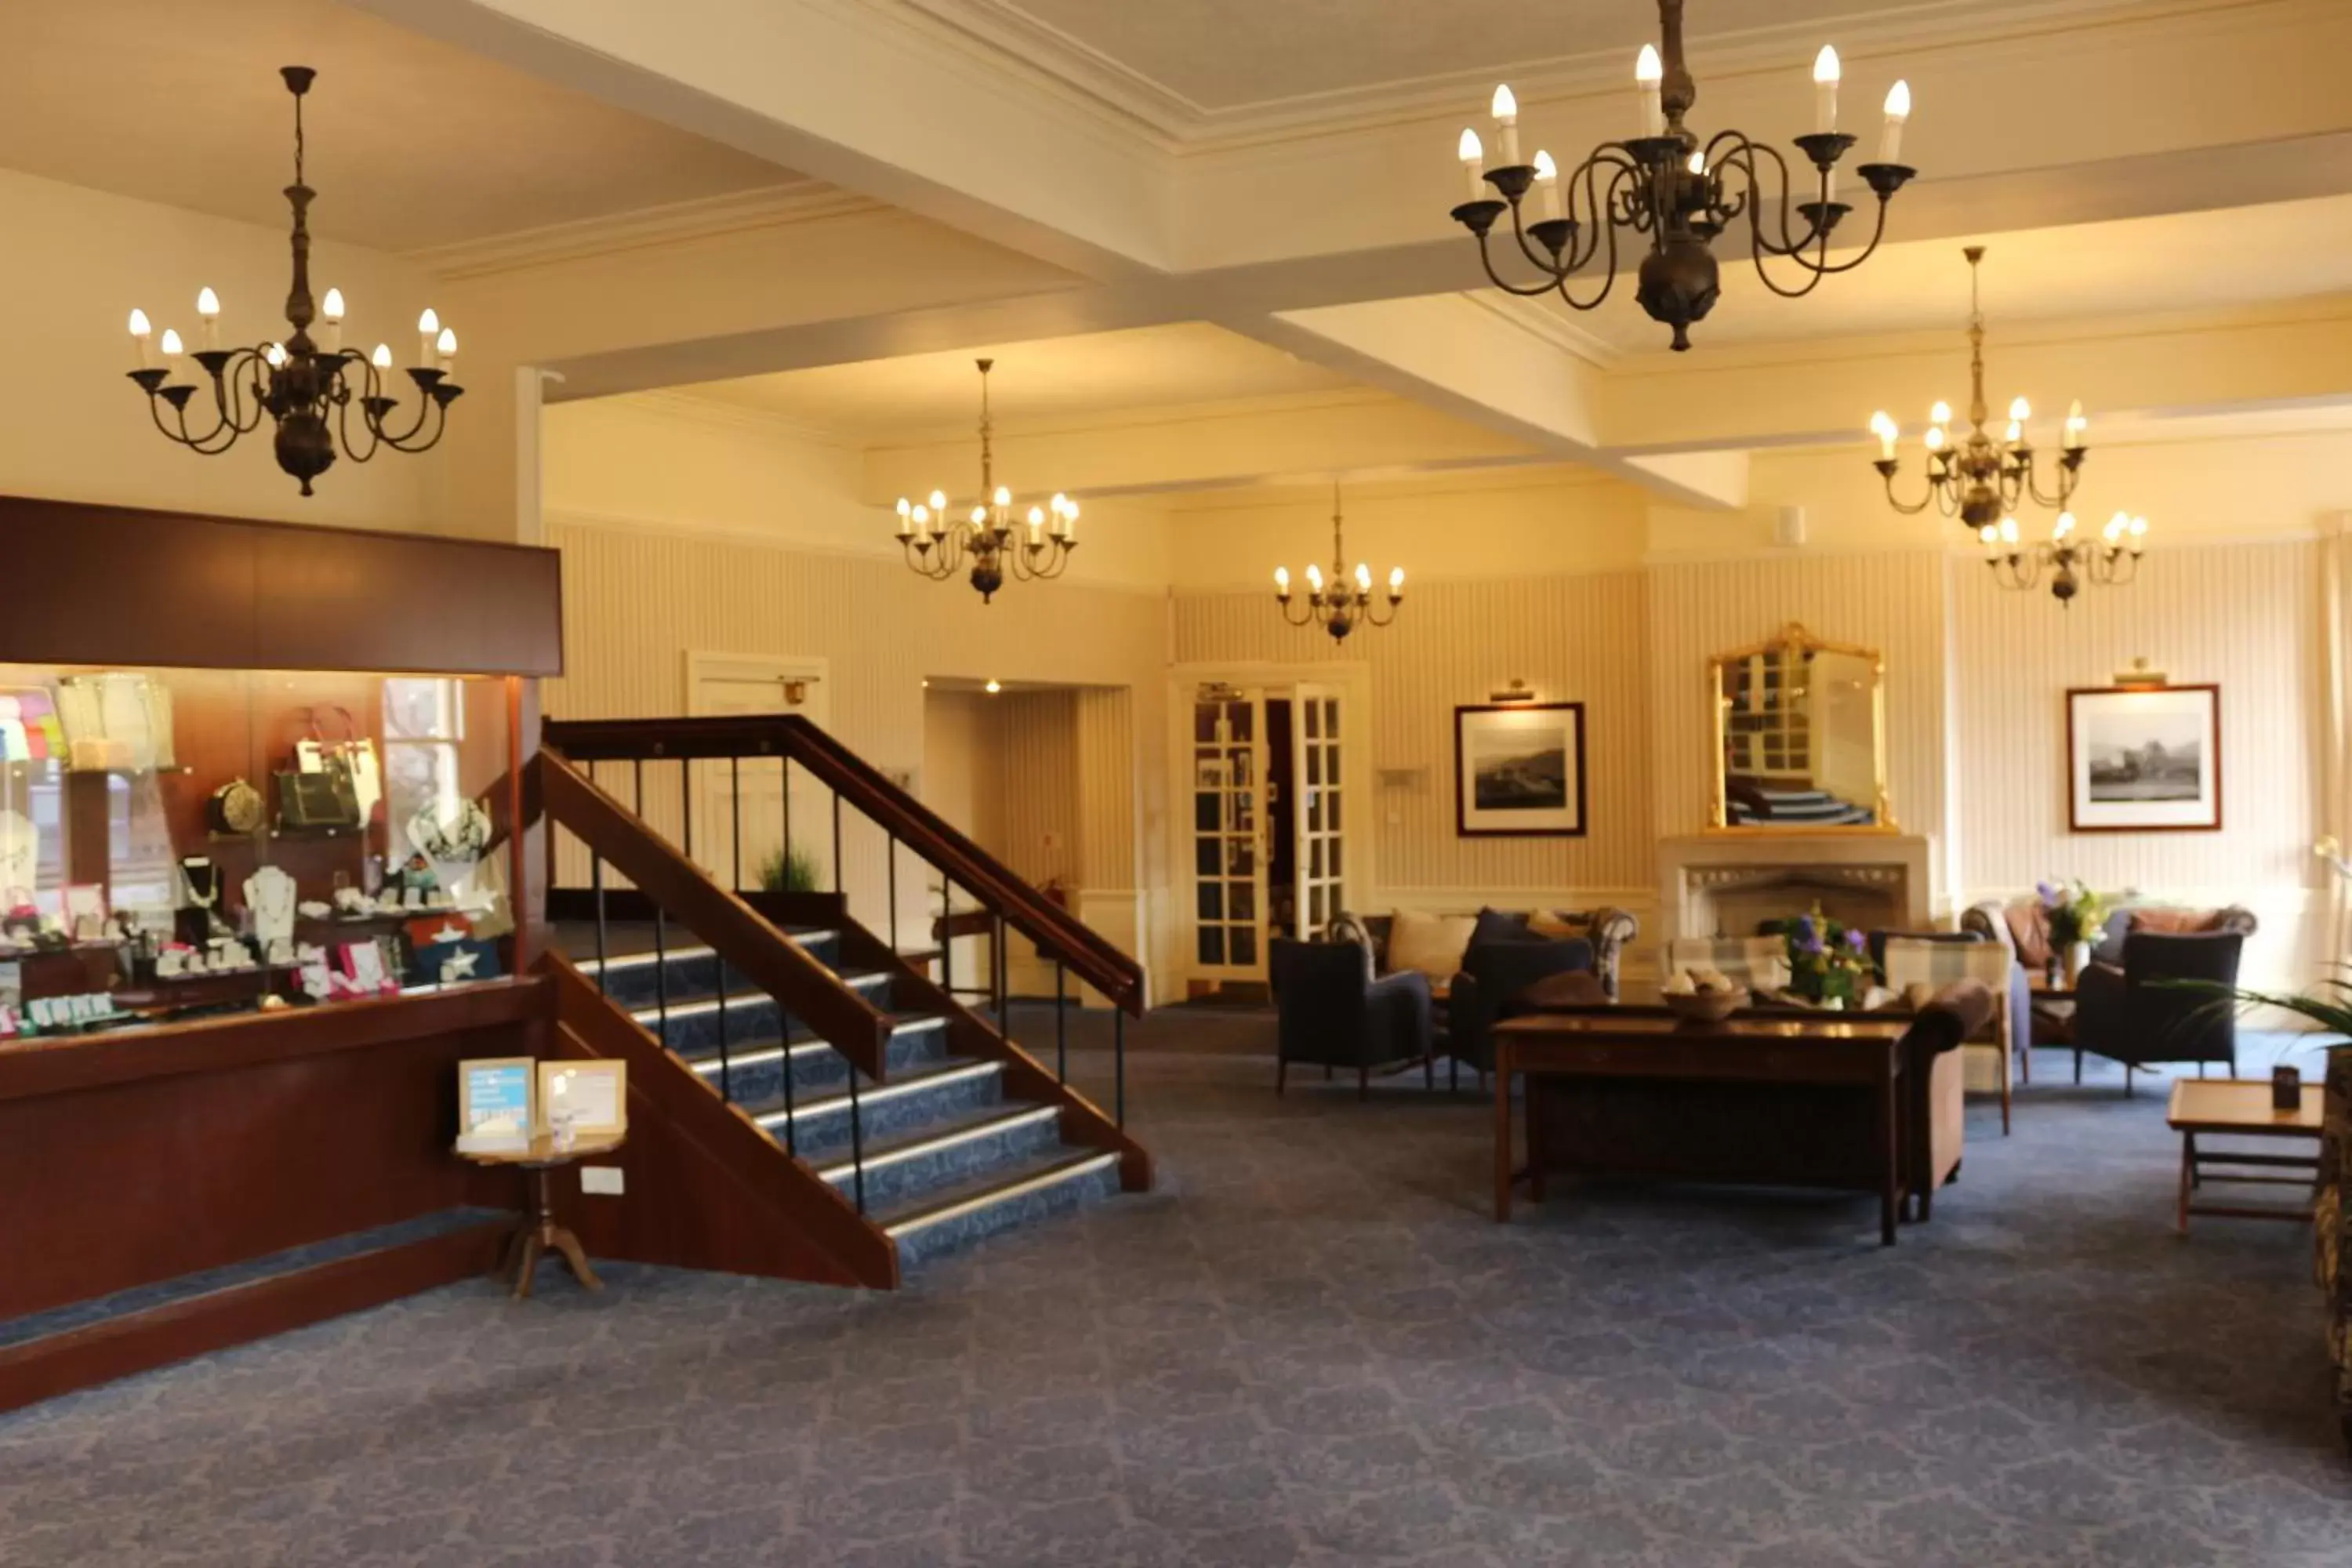 Lobby or reception, Lobby/Reception in Craiglynne Hotel